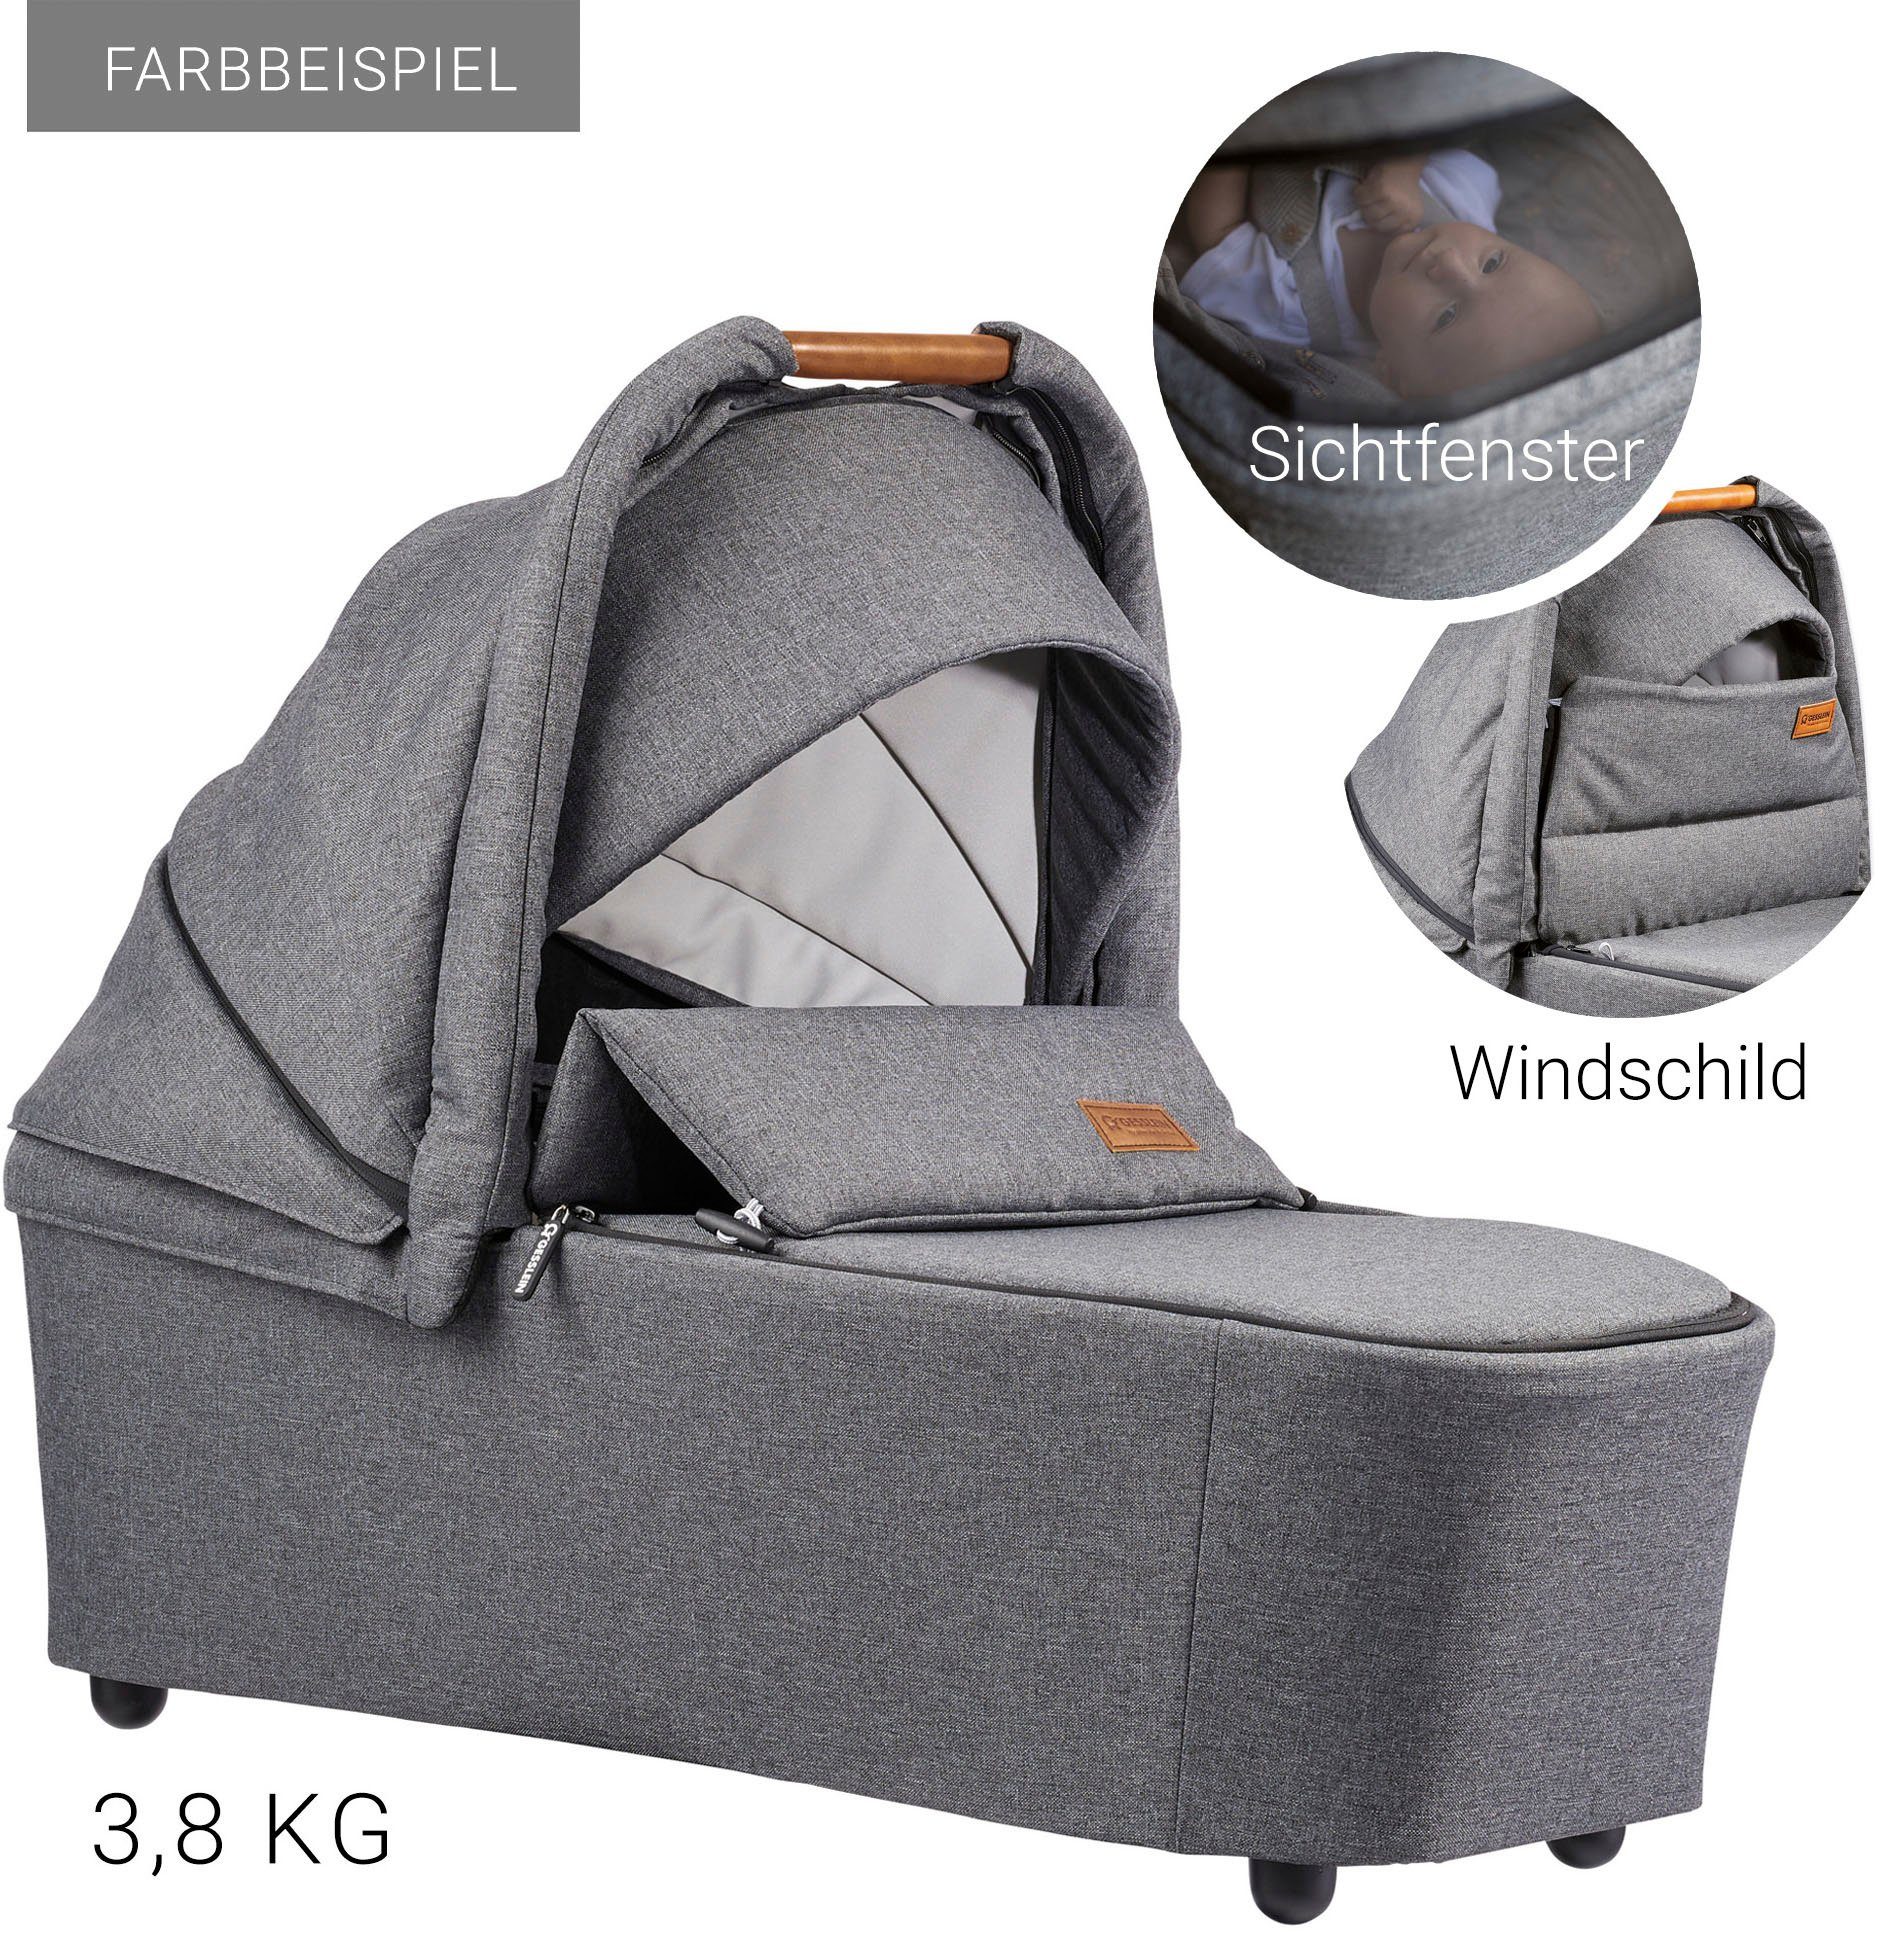 FX4 Gesslein Aufsatz Babywanne und mit Kombi-Kinderwagen Soft+ Babyschalenadapter Style, C3 taube/cognac, mit